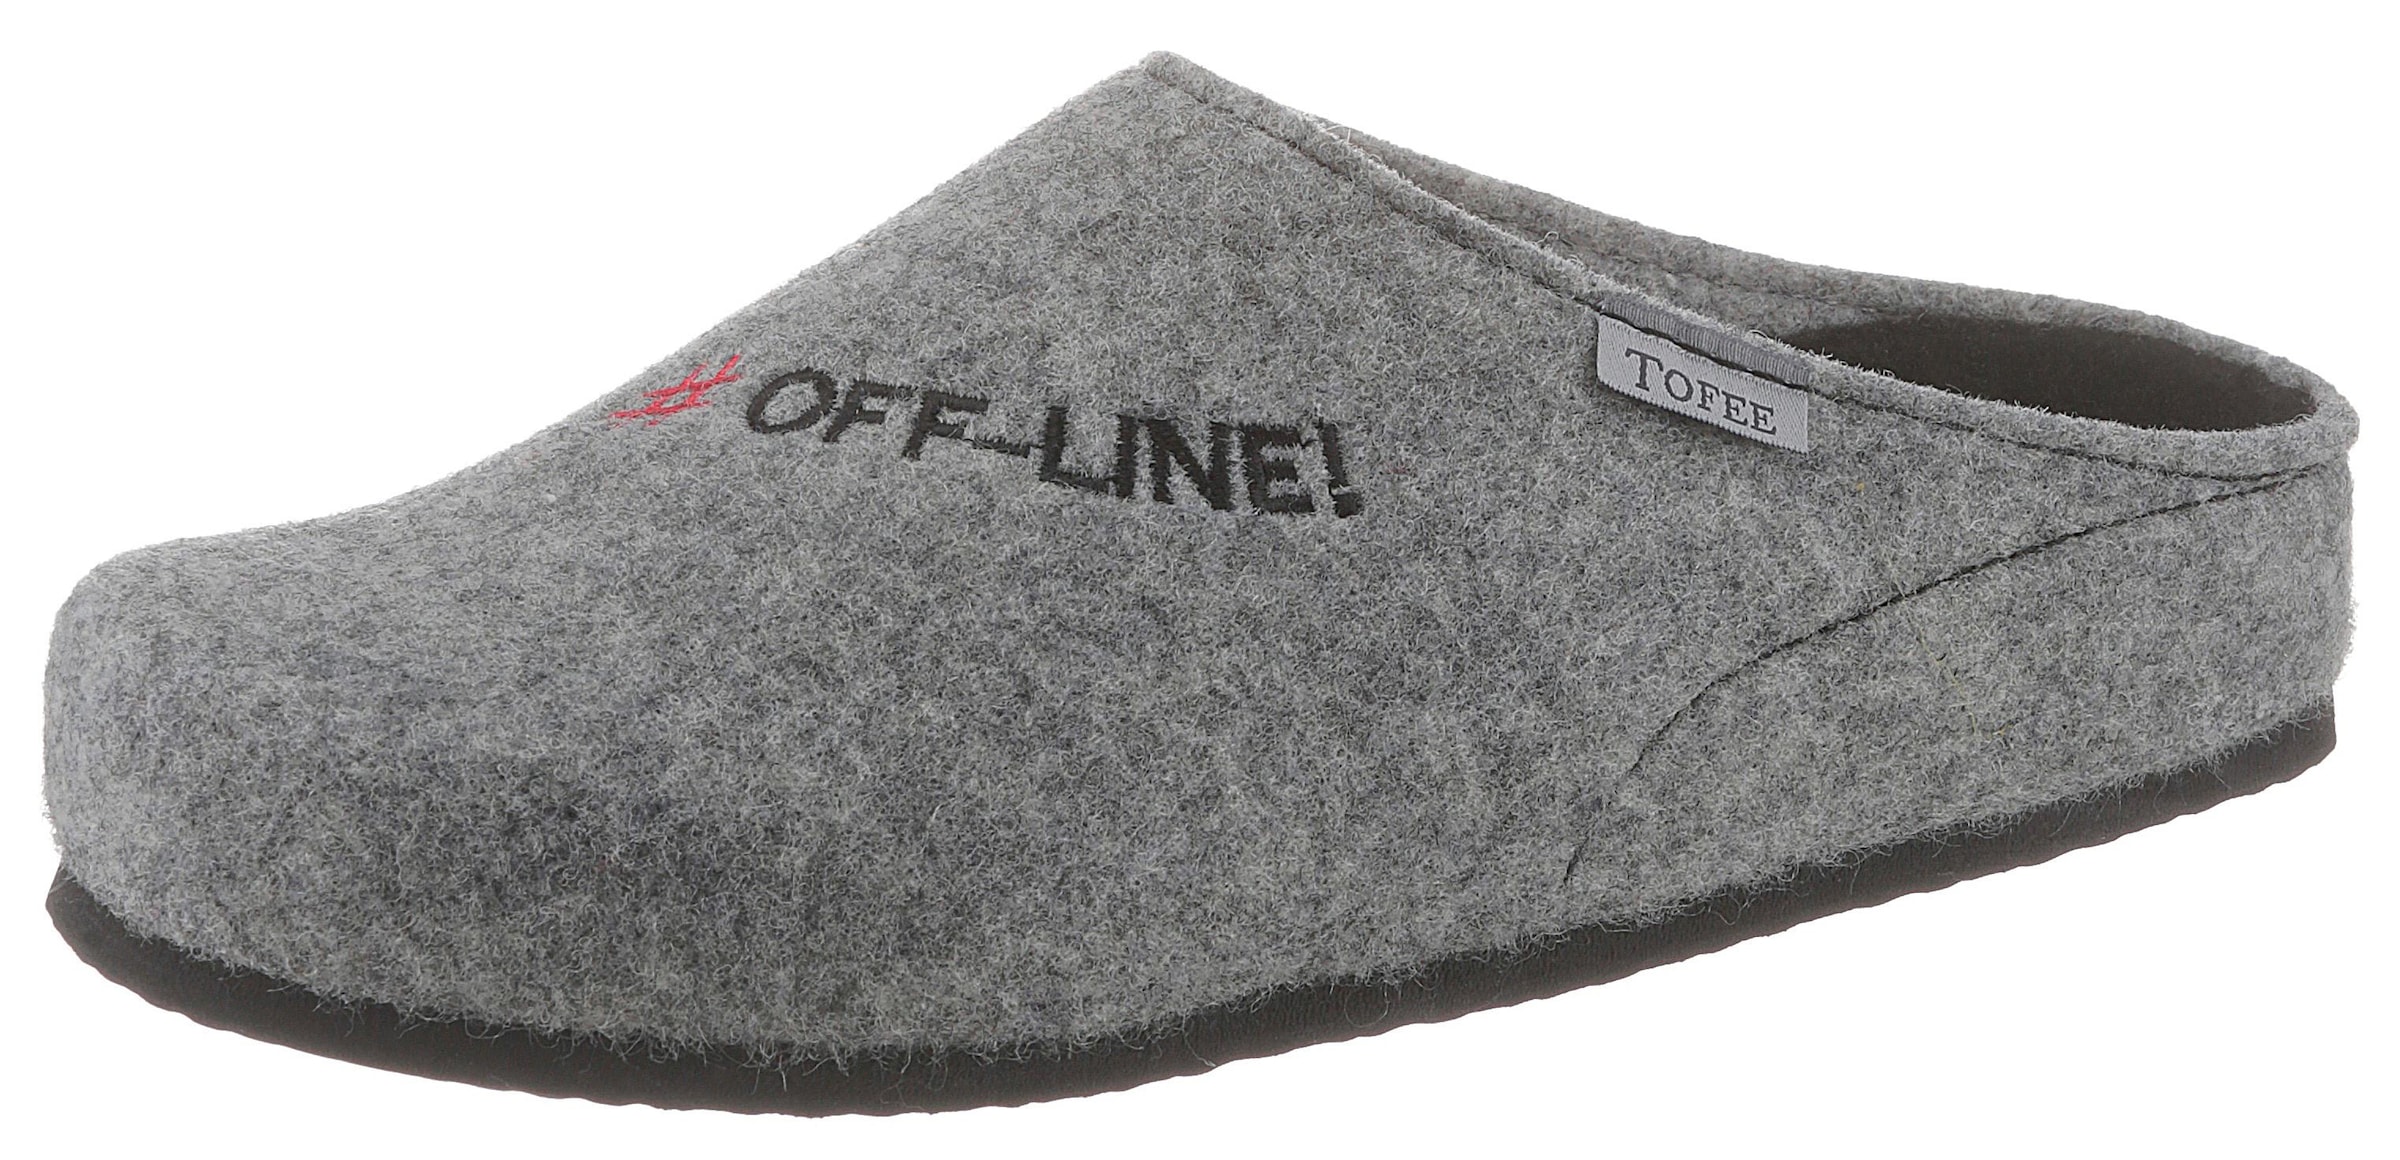 Pantoffel, mit Schriftzug "#Off-Line!"